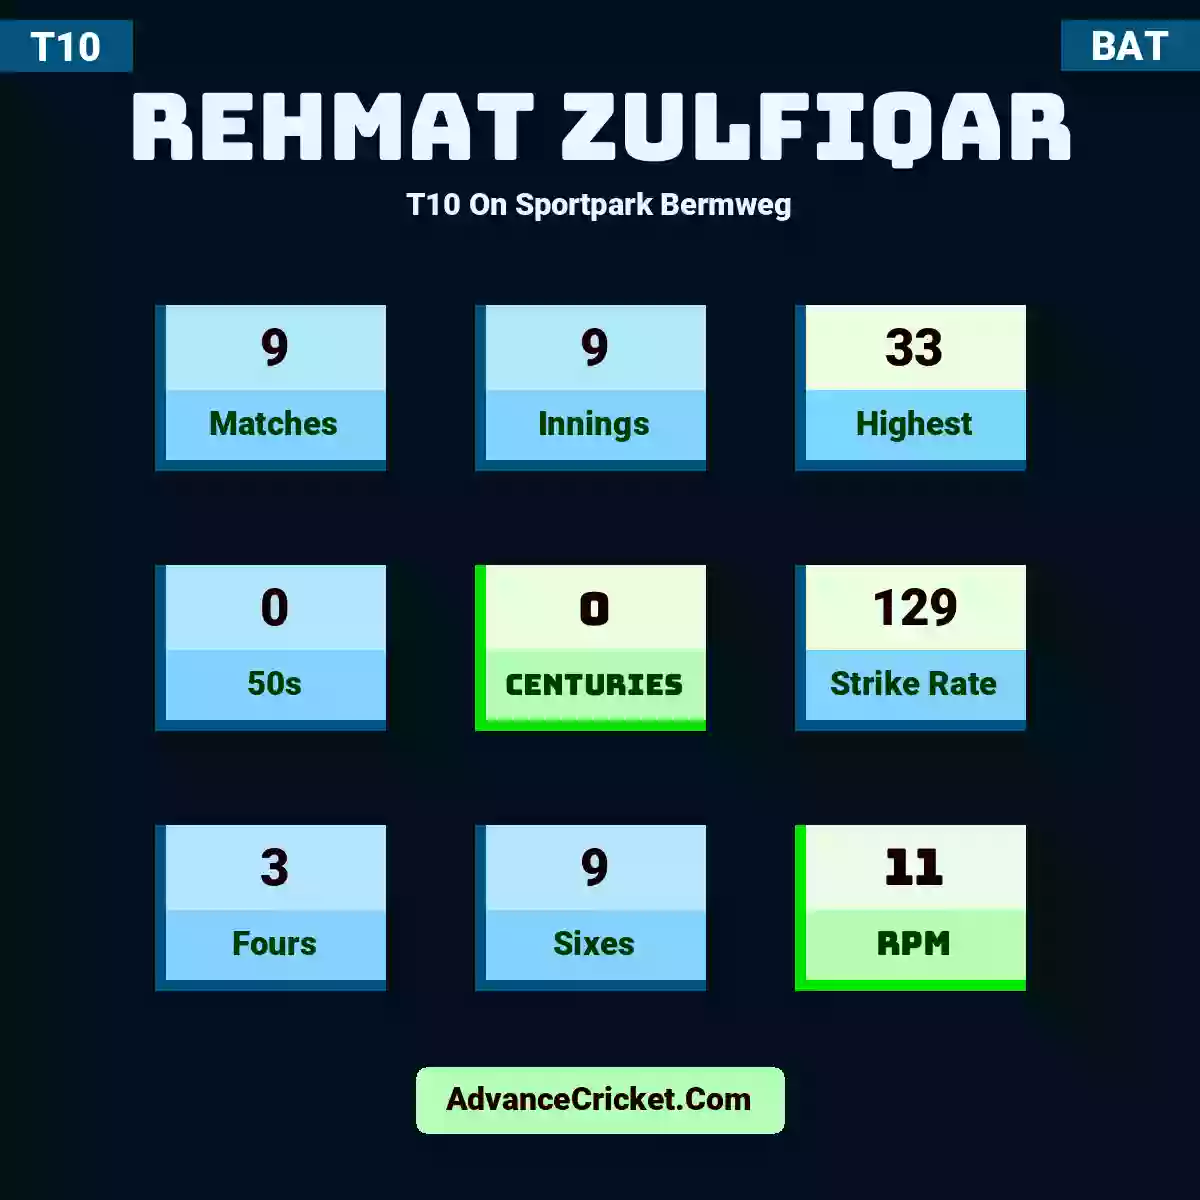 Rehmat Zulfiqar T10  On Sportpark Bermweg, Rehmat Zulfiqar played 9 matches, scored 33 runs as highest, 0 half-centuries, and 0 centuries, with a strike rate of 129. R.Zulfiqar hit 3 fours and 9 sixes, with an RPM of 11.